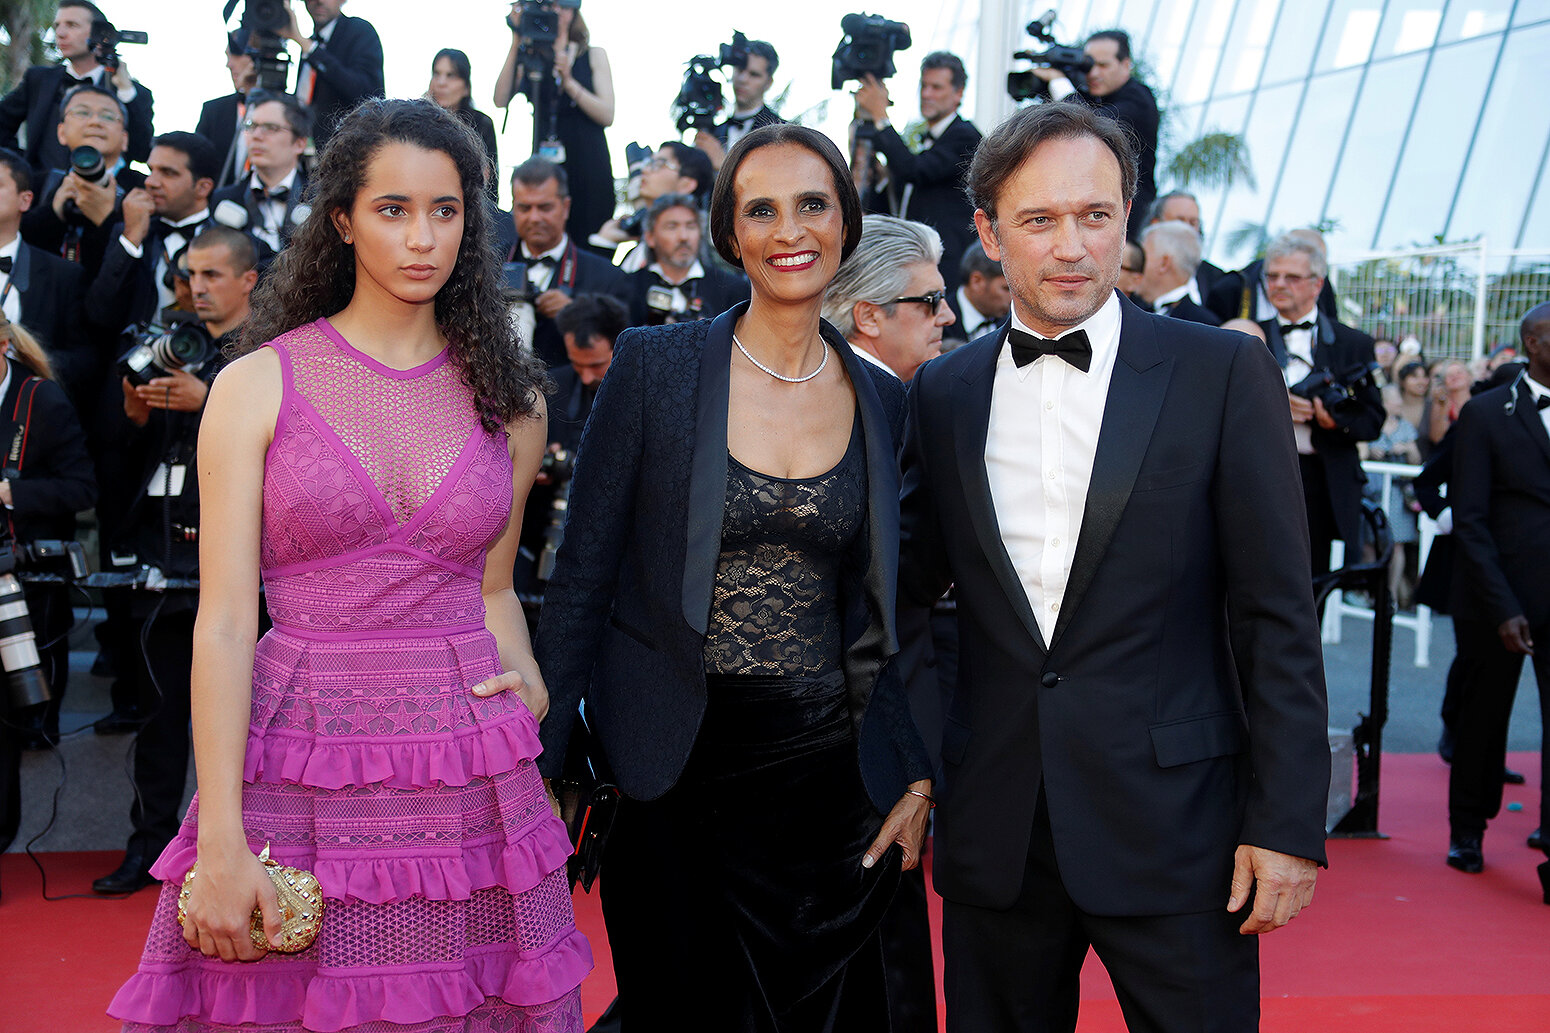 <p>Актер Венсан Перес с супругой Карин Силла и дочерью</p>

<p>&nbsp;</p>